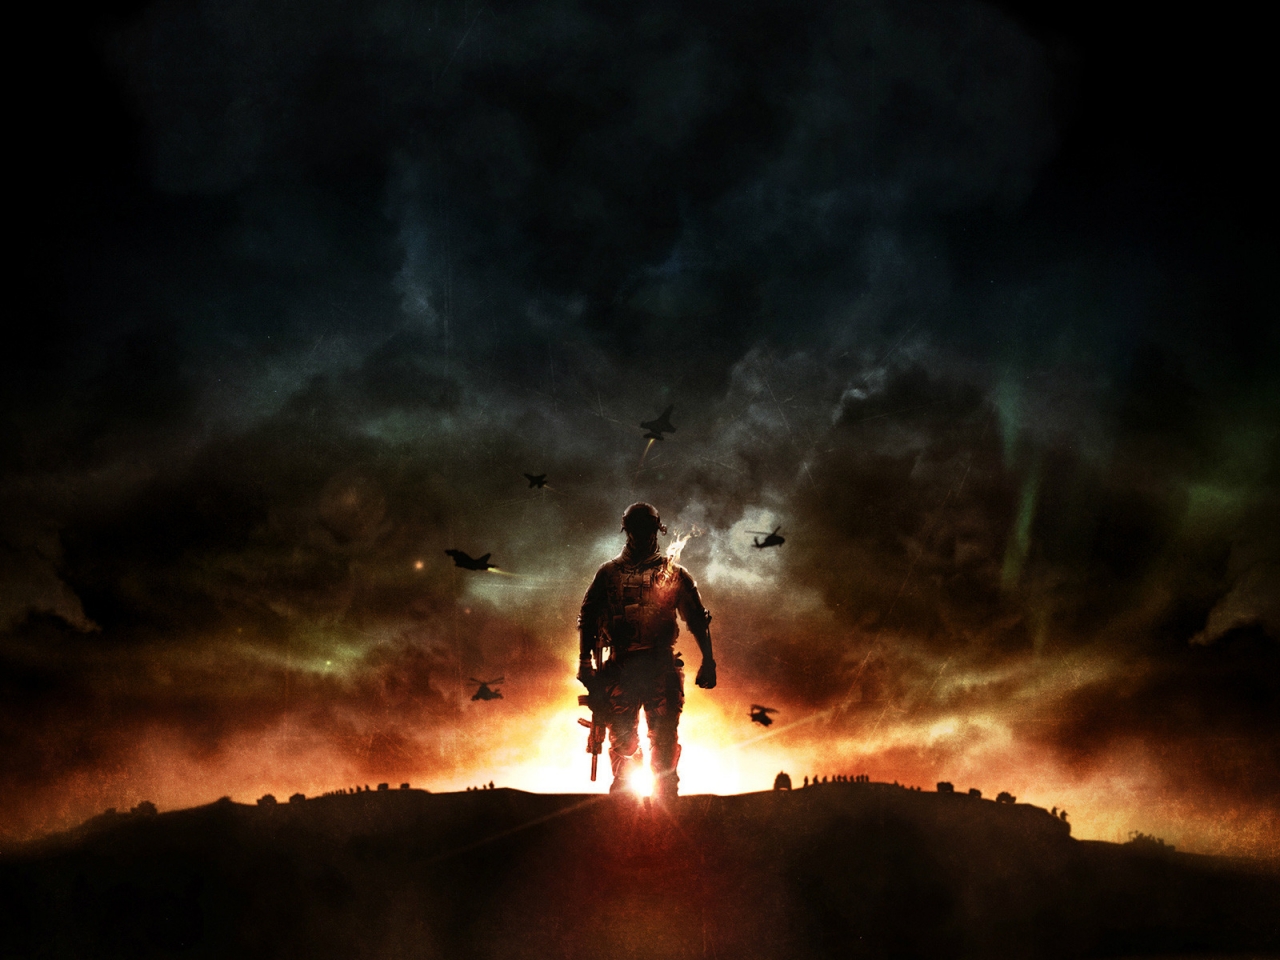 Battlefield 4 Sunset War for 1280 x 960 resolution